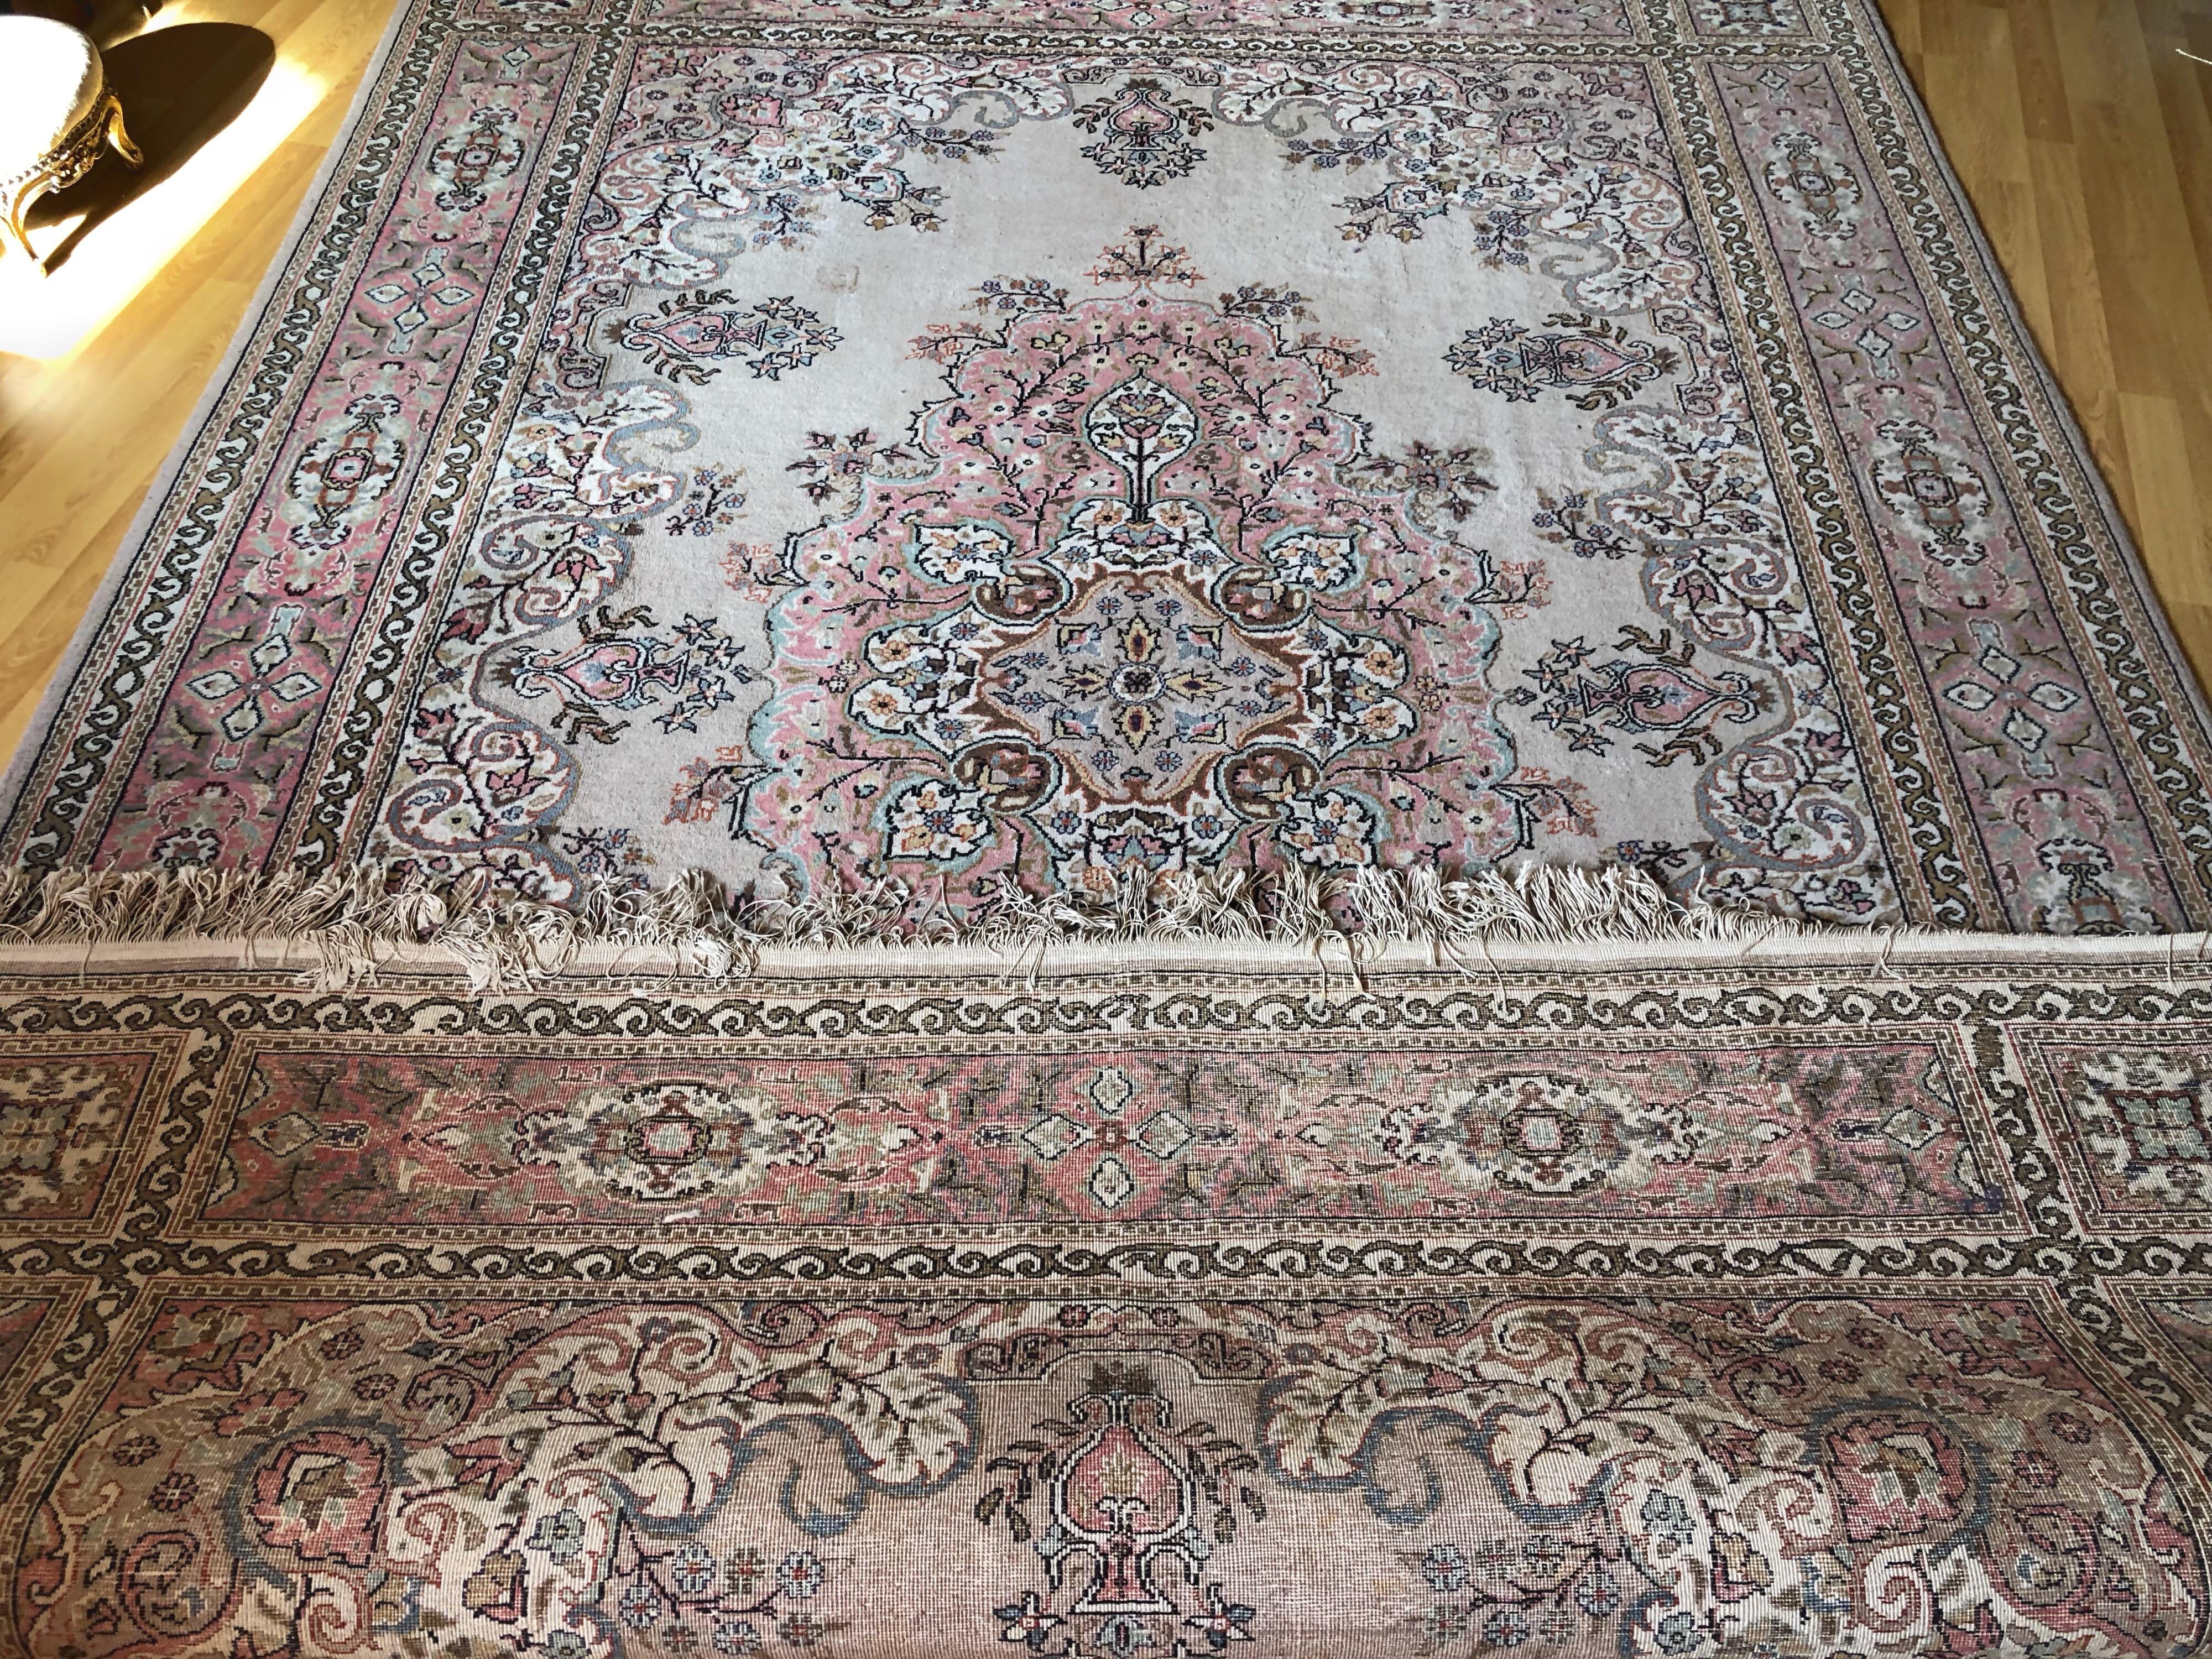 Wool Turkish Large Carpet Kilim Pink Blue Floral Motives Elegant Asian Design SALE 